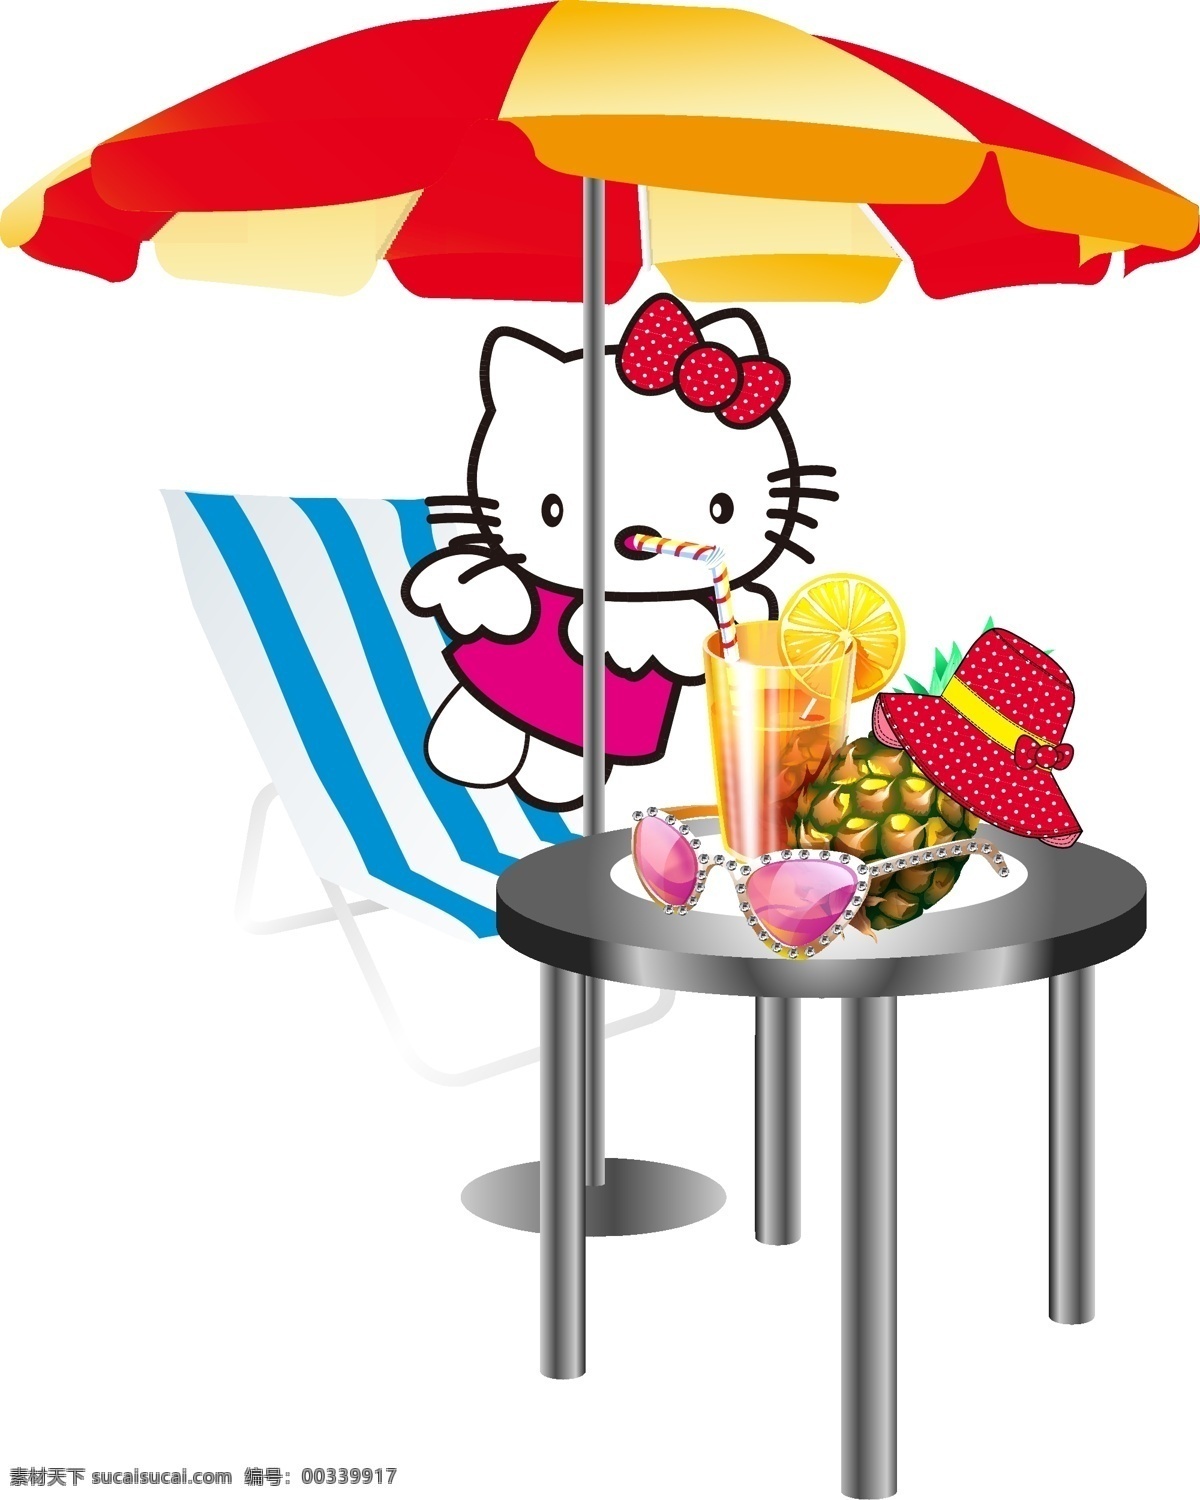 kt猫 菠萝 帽子 其他设计 躺椅 眼镜 遮阳伞 桌子 kt 猫 喝 水果 饮料 矢量 模板下载 水果饮料杯 矢量图 日常生活